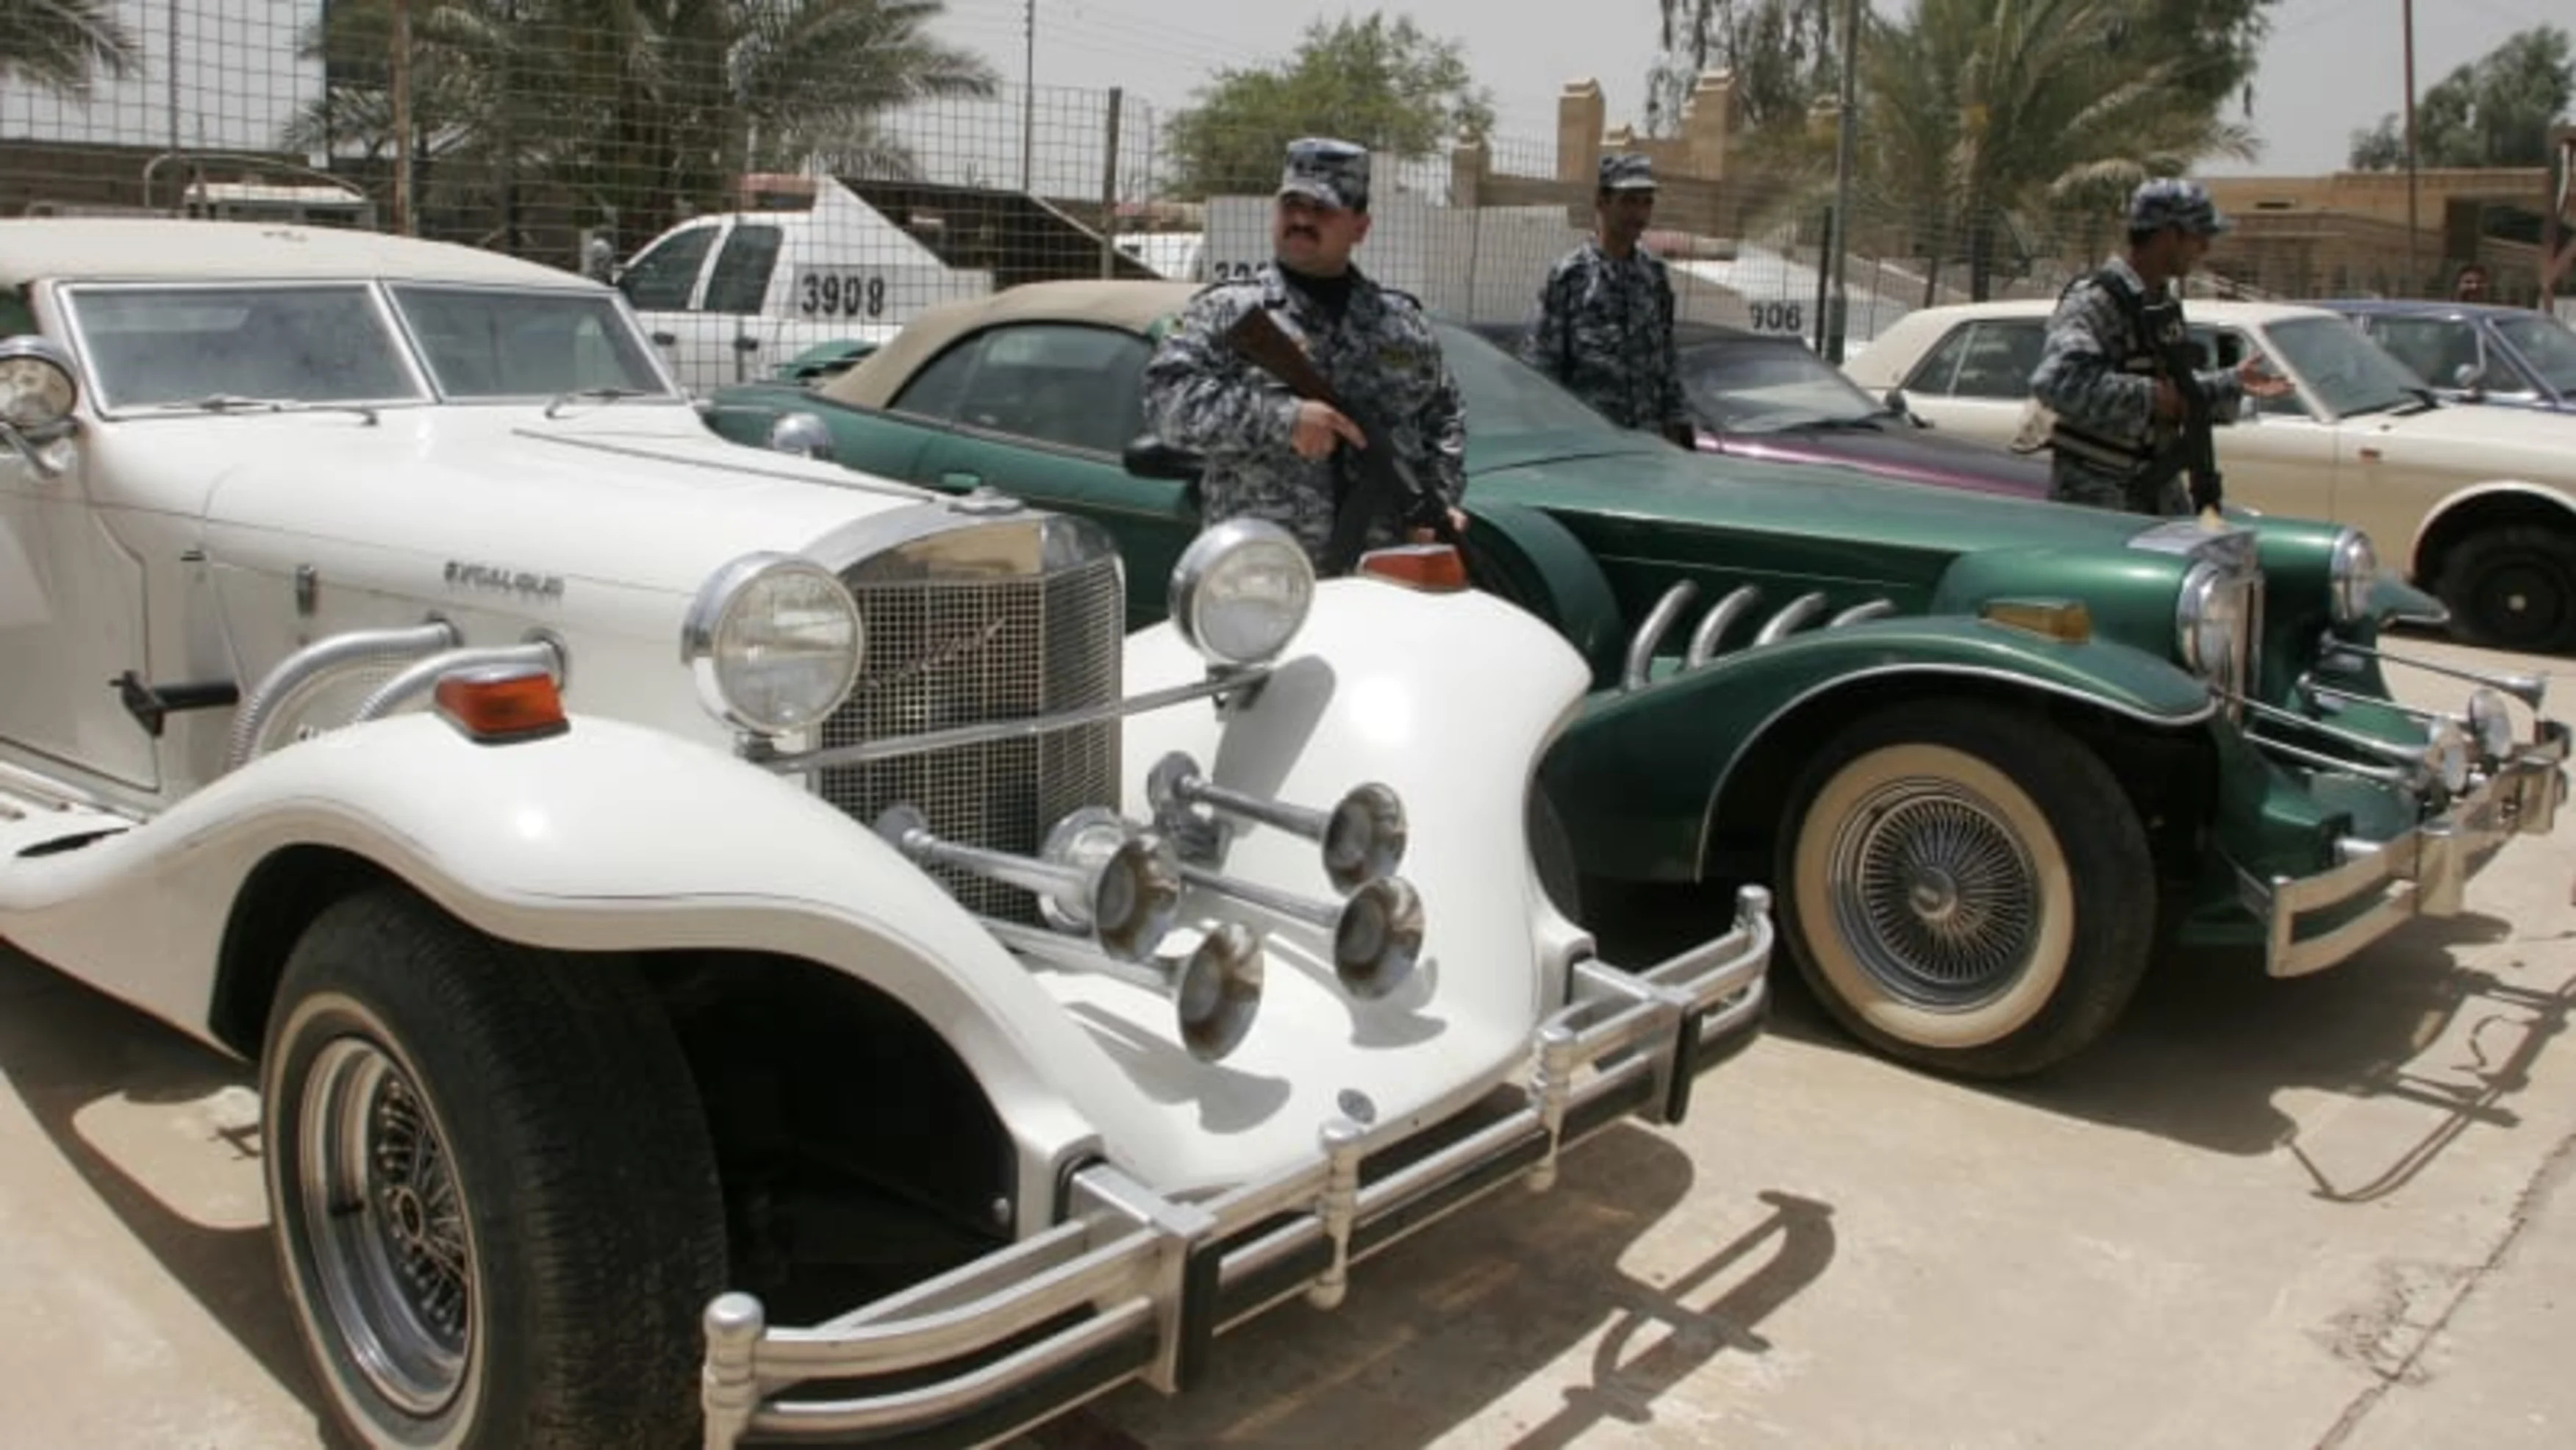 IRAQ SADDAMS SON CARS